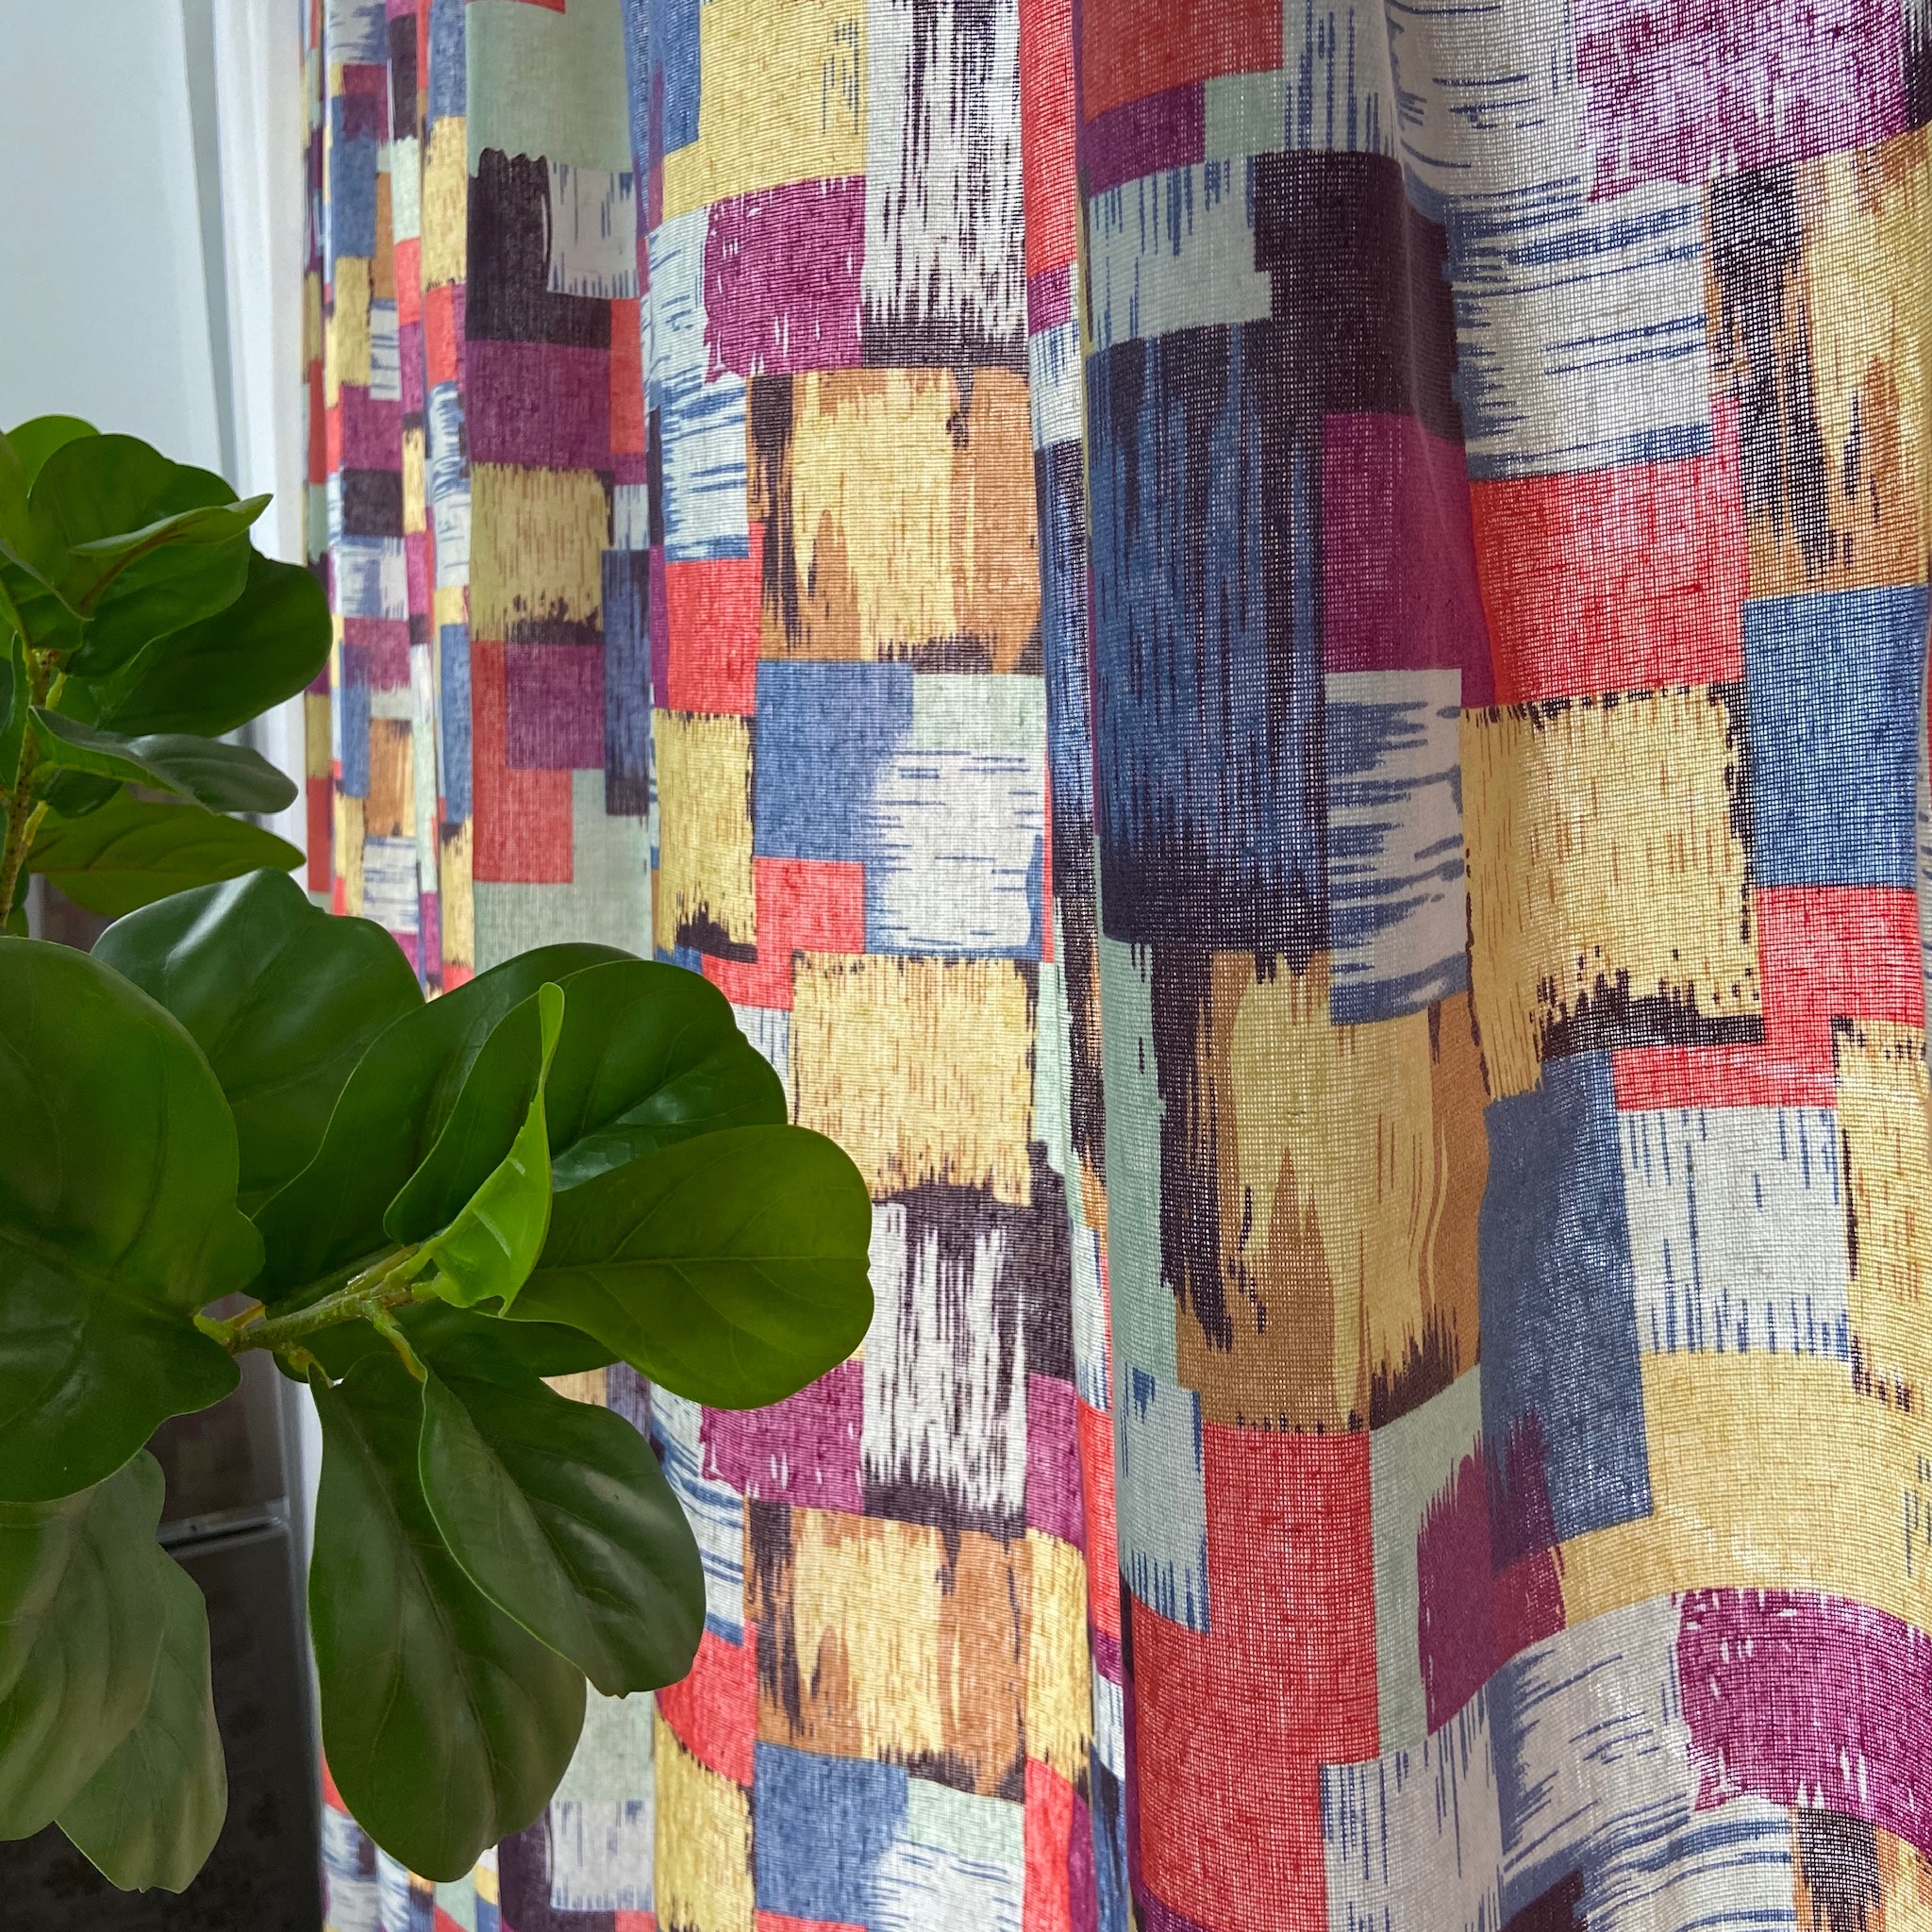 Rèm cửa sổ chống nắng decor MARYTEXCO trang trí nhà cửa, làm dịu nhẹ ánh sáng tự nhiên, rèm ore hoàn thiện tặng kèm dây buộc rèm vintage - họa tiết SẮC MÀU R-A05